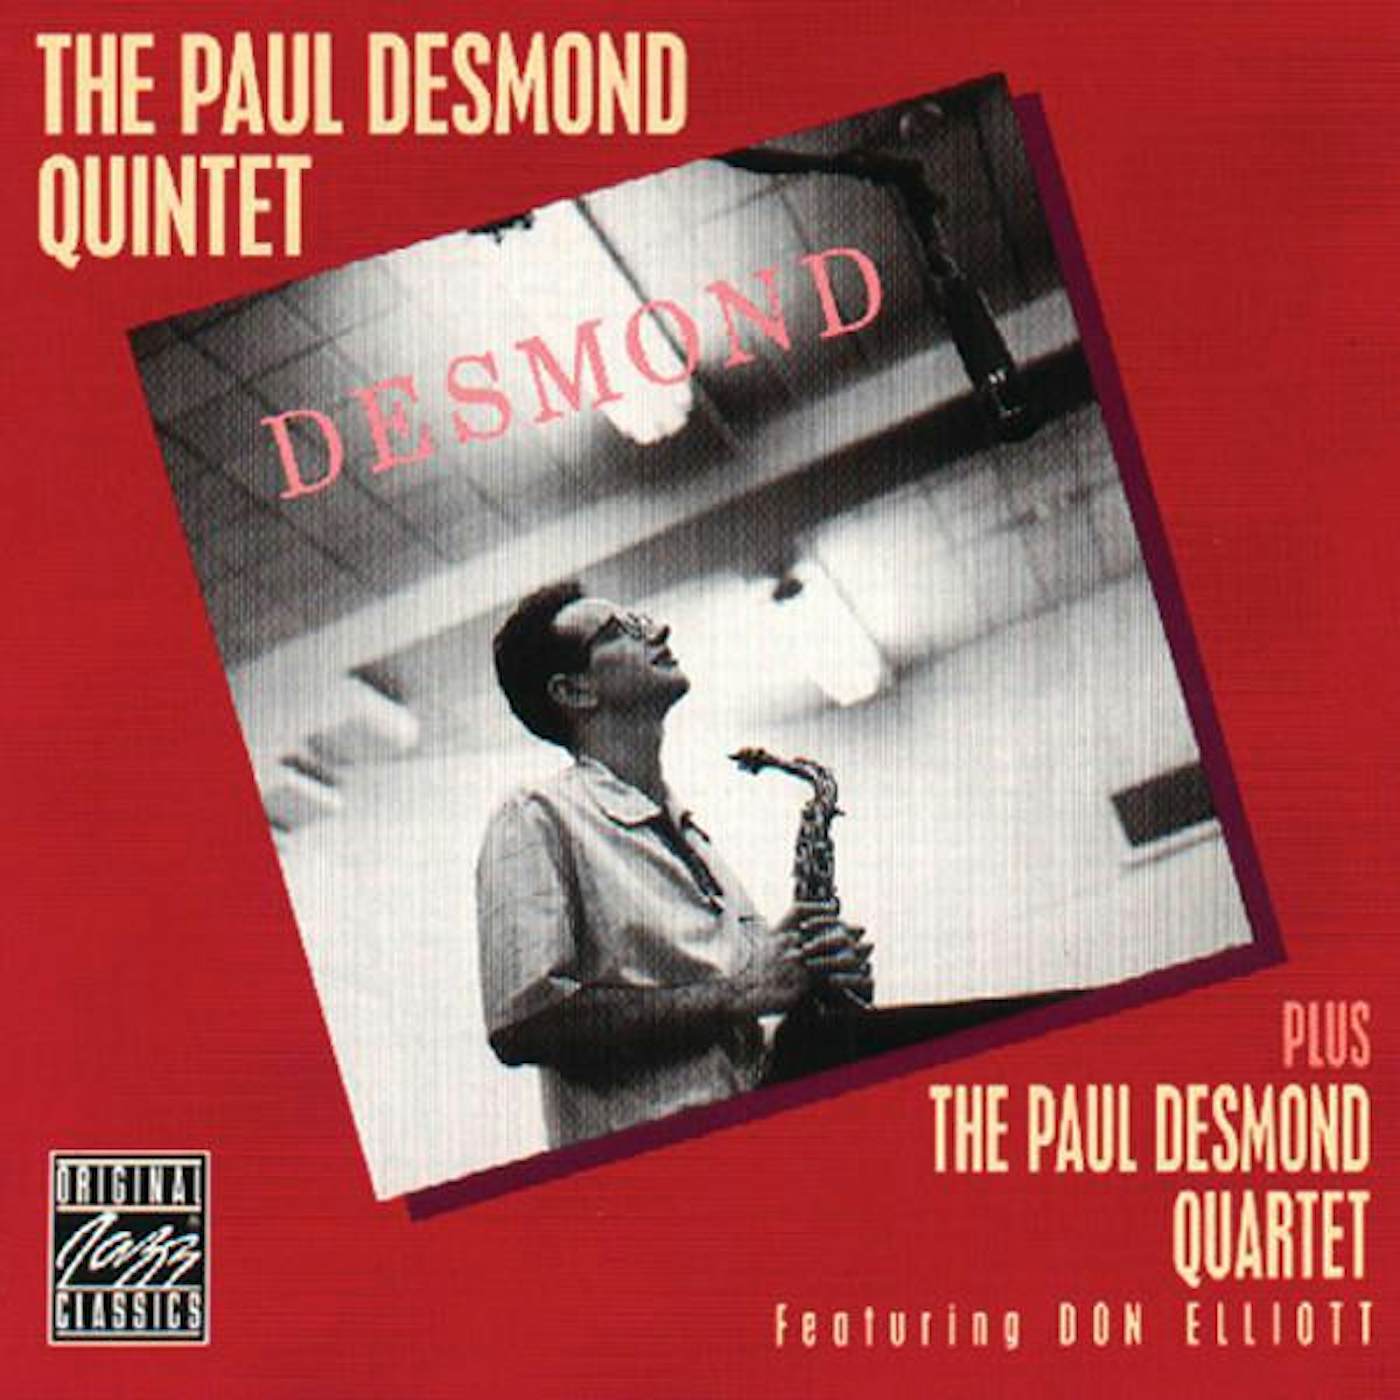 The Paul Desmond Quintet